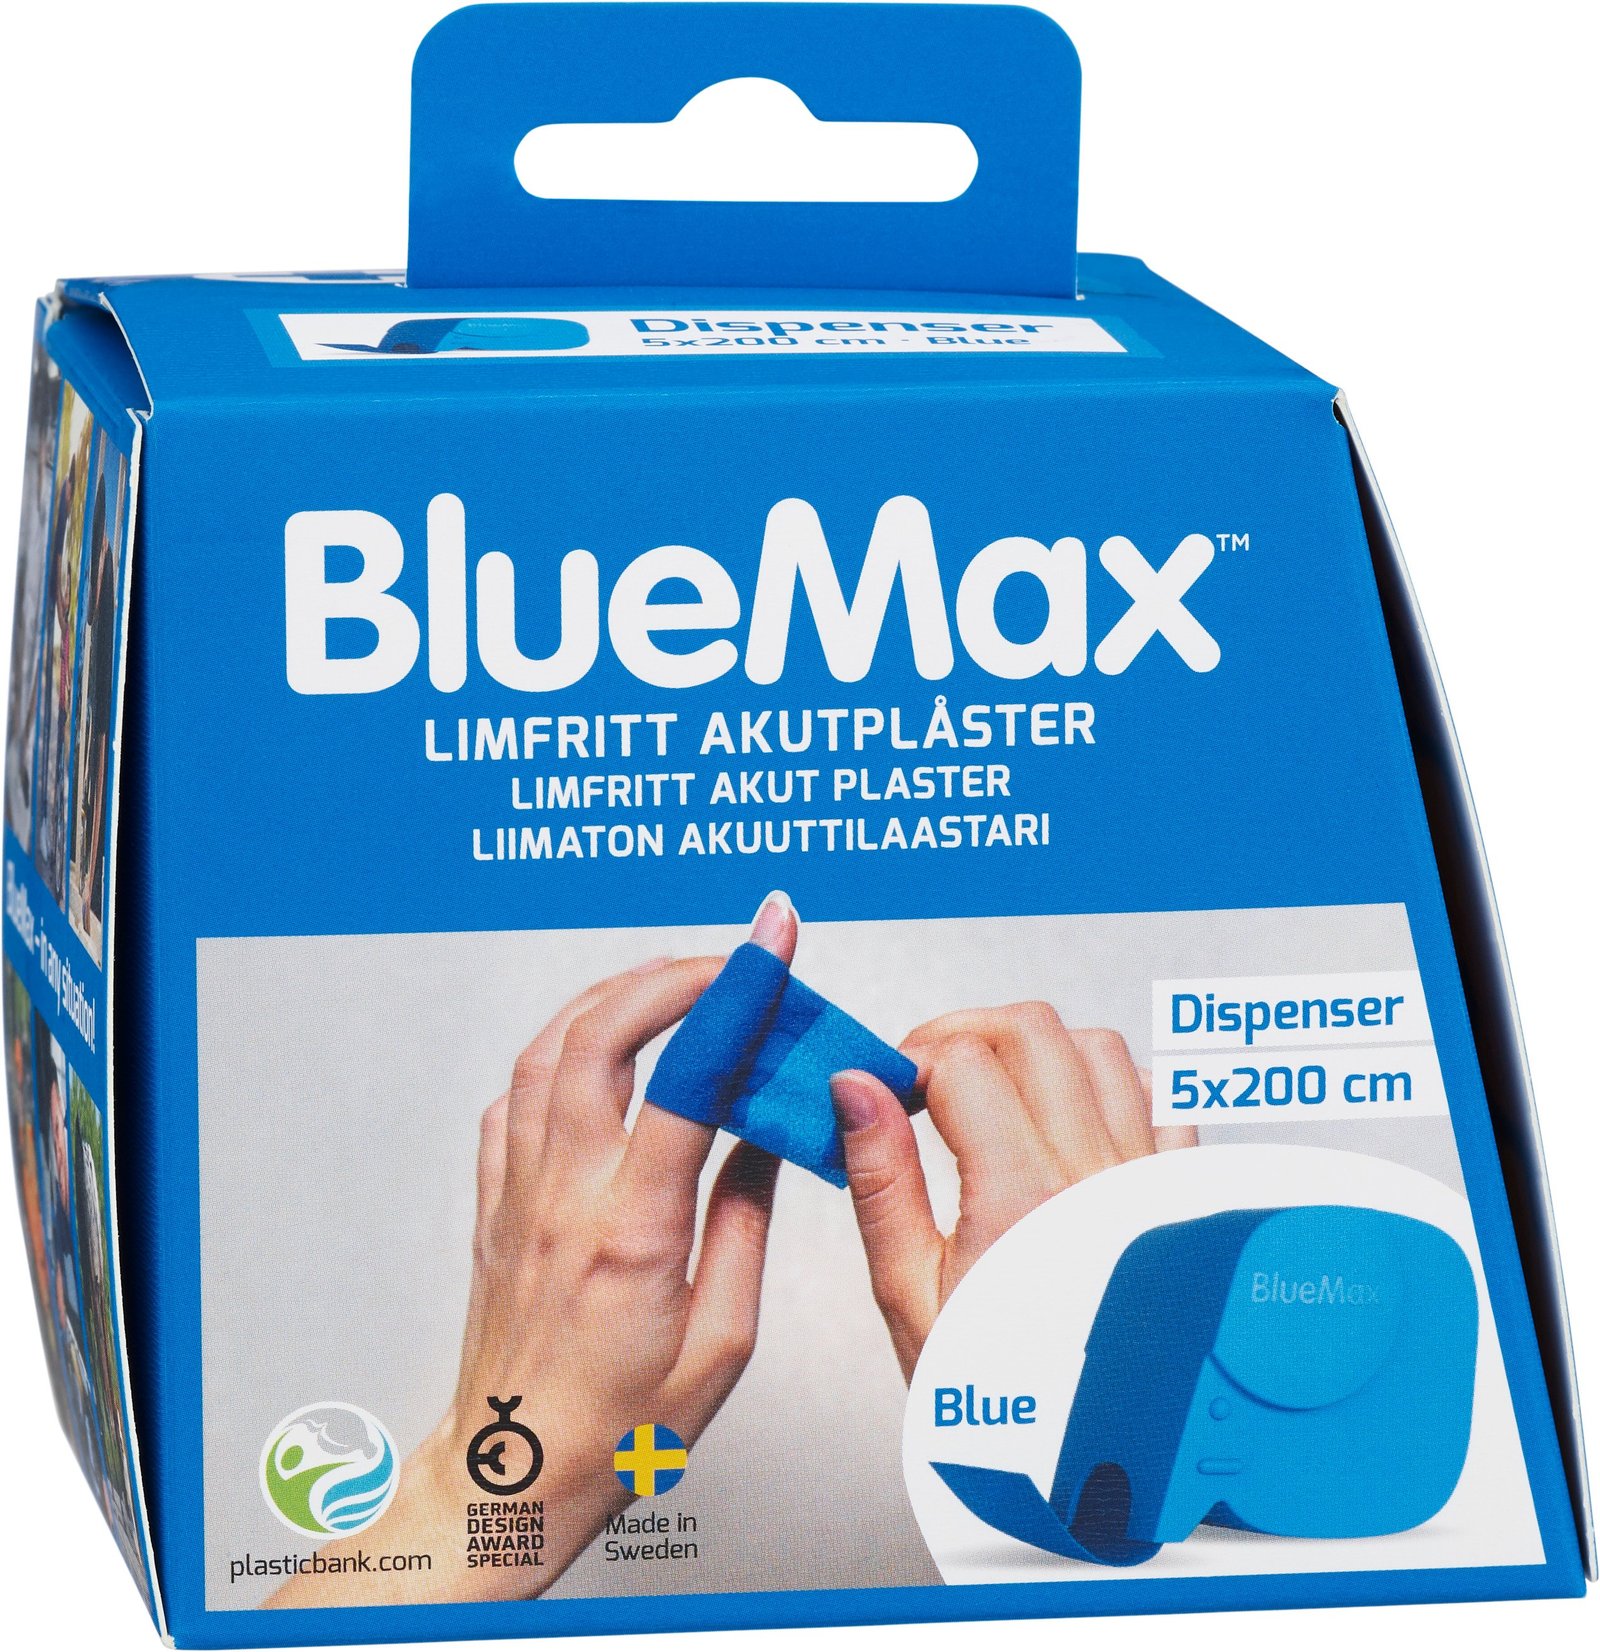 BlueMax Limfritt Akutplåster Dispenser 5x200cm Blå 1 st